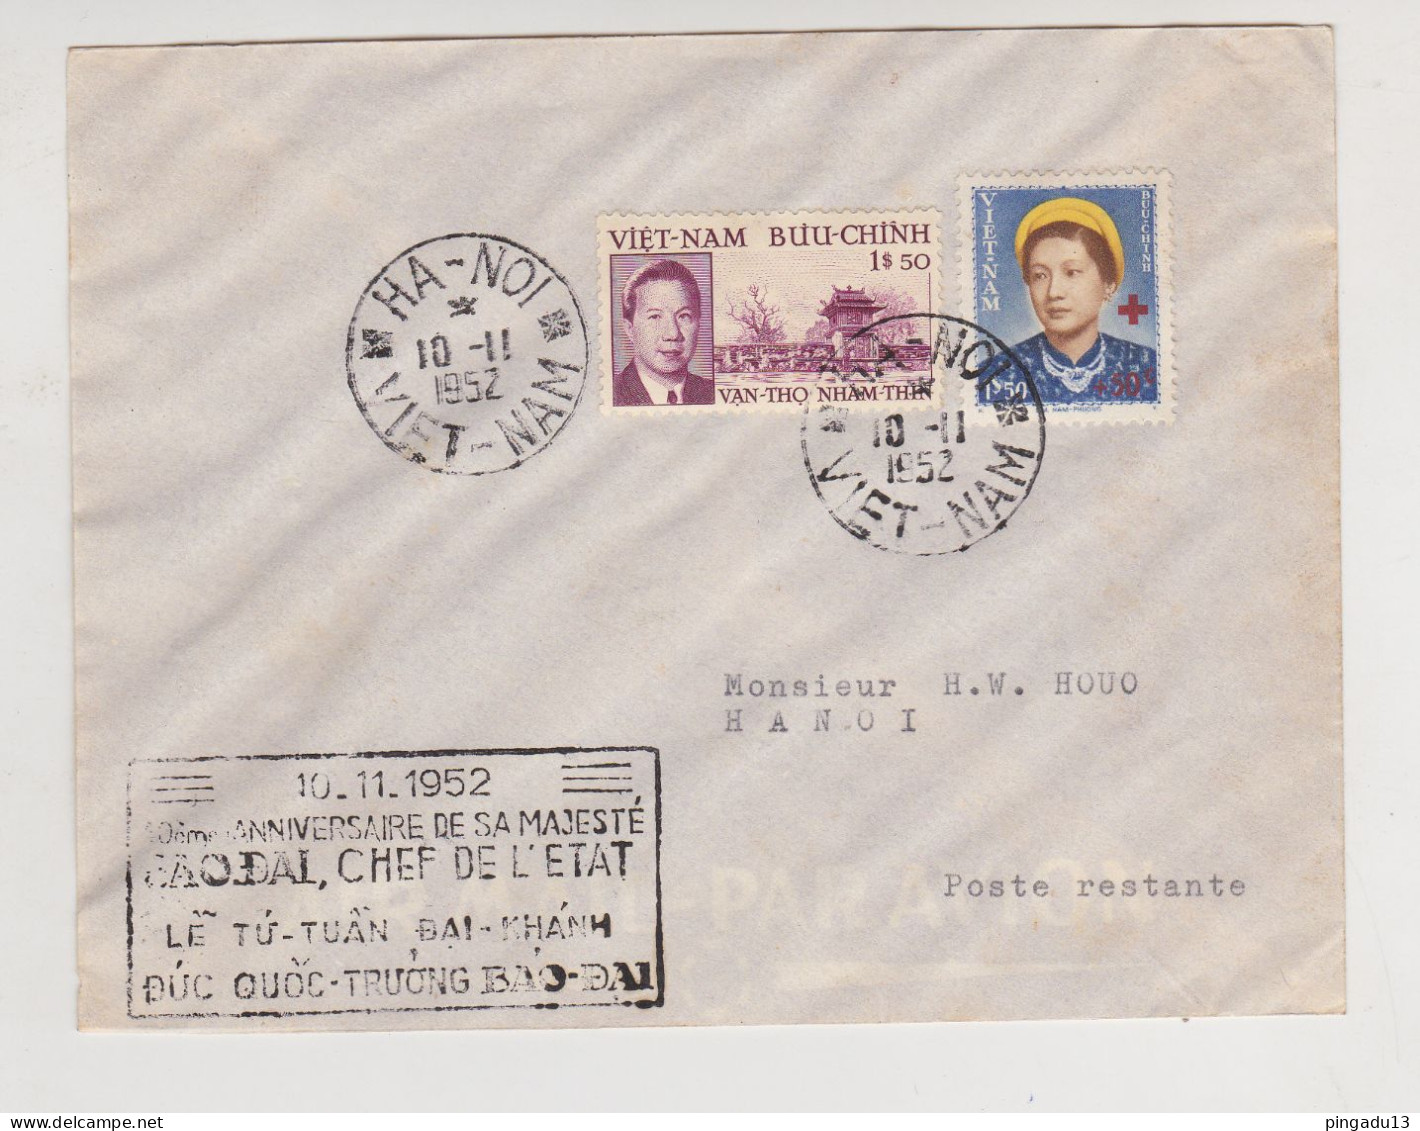 Fixe Enveloppe Poste Restante Hanoi Ha-Noï Viet-Nam 10 Novembre 1952 Anniversaire Baodaï Croix-Rouge - Vietnam